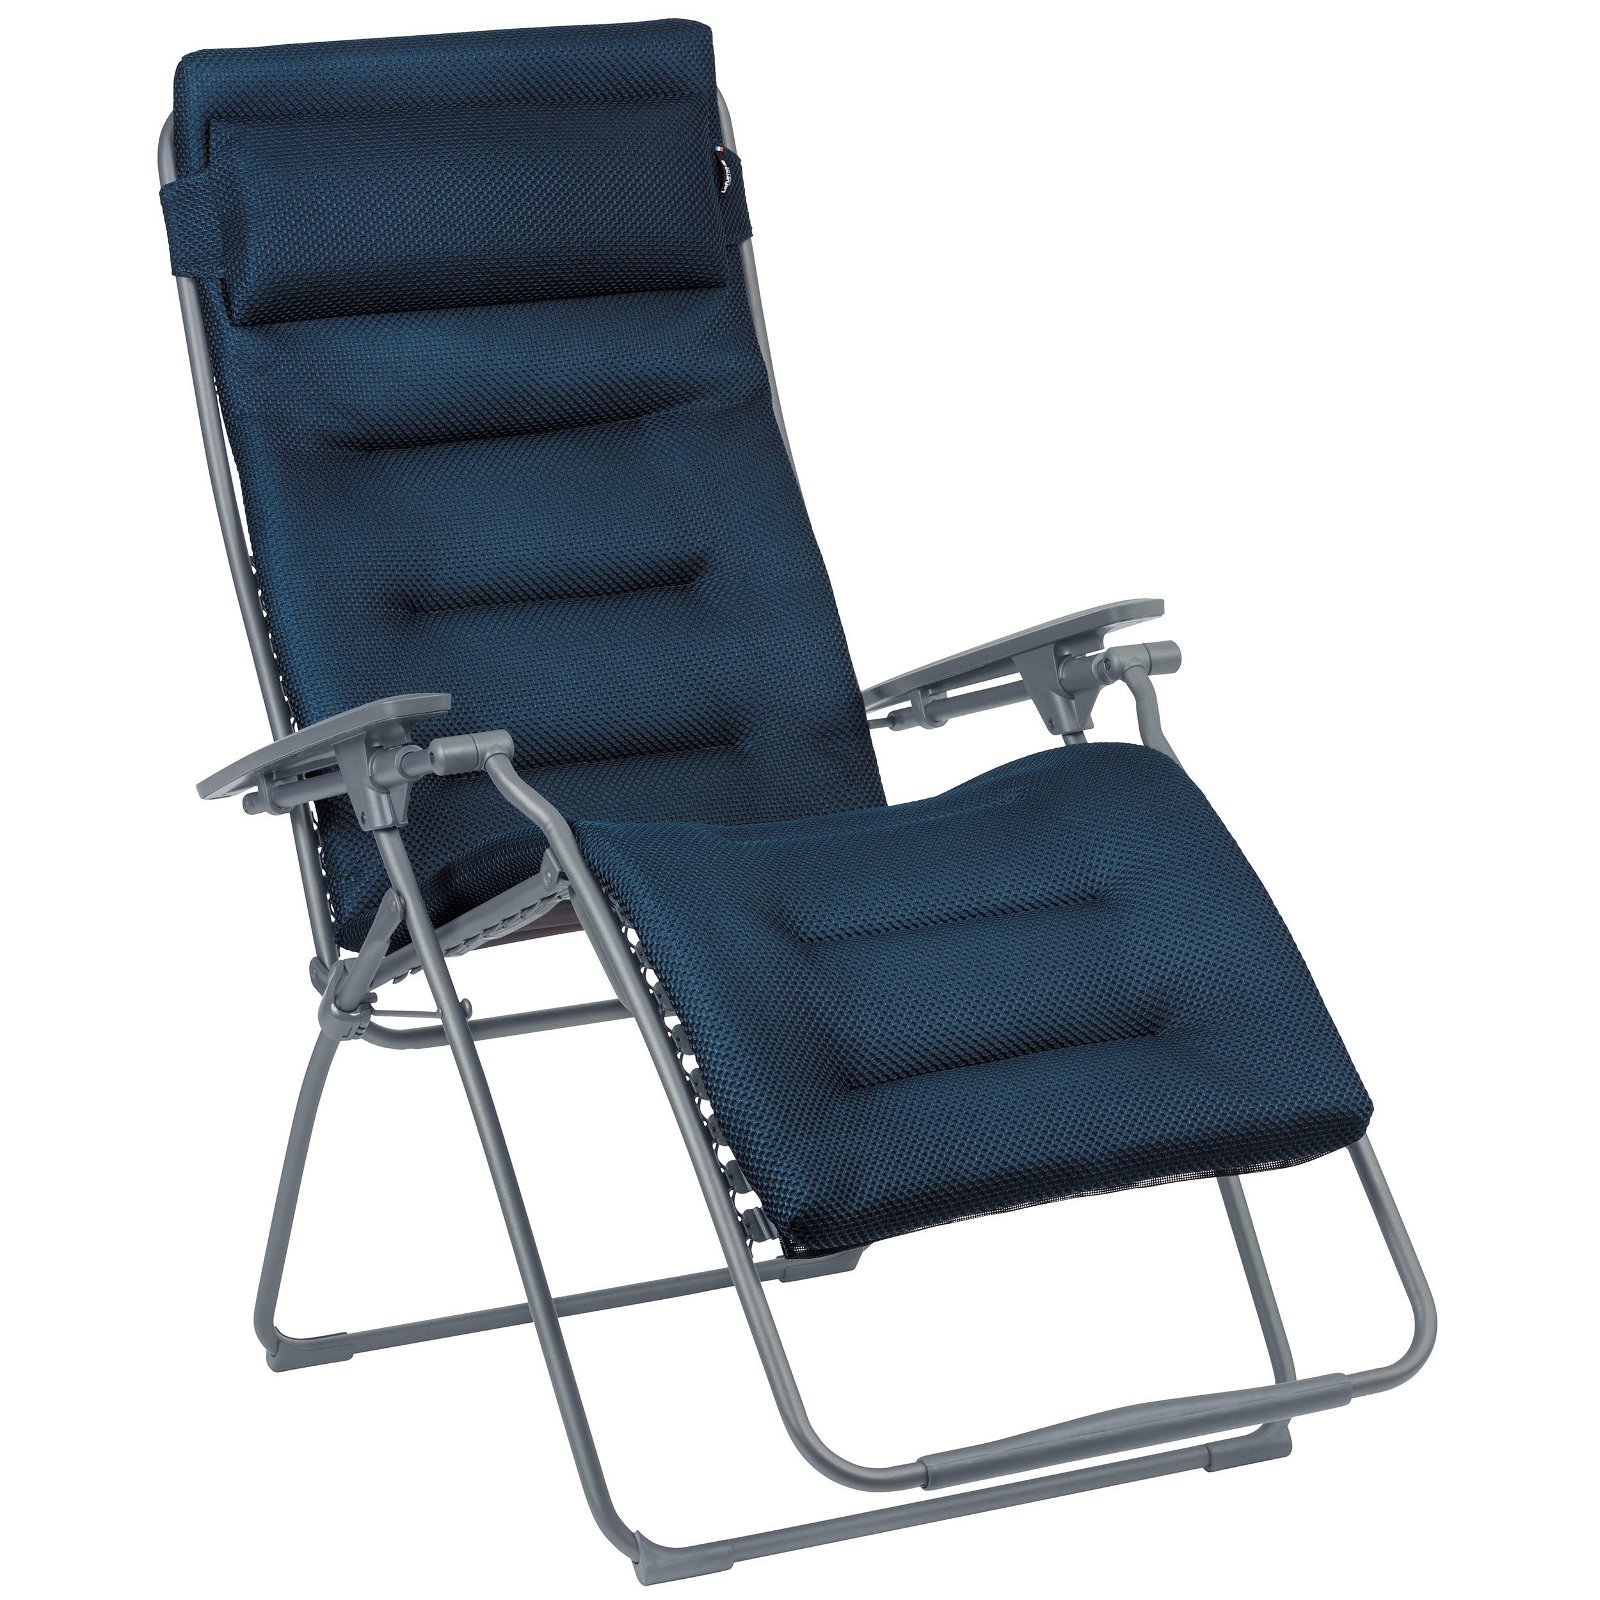 Relaxsessel Futura XL, Stahlrohr/BeComfort ®, blau